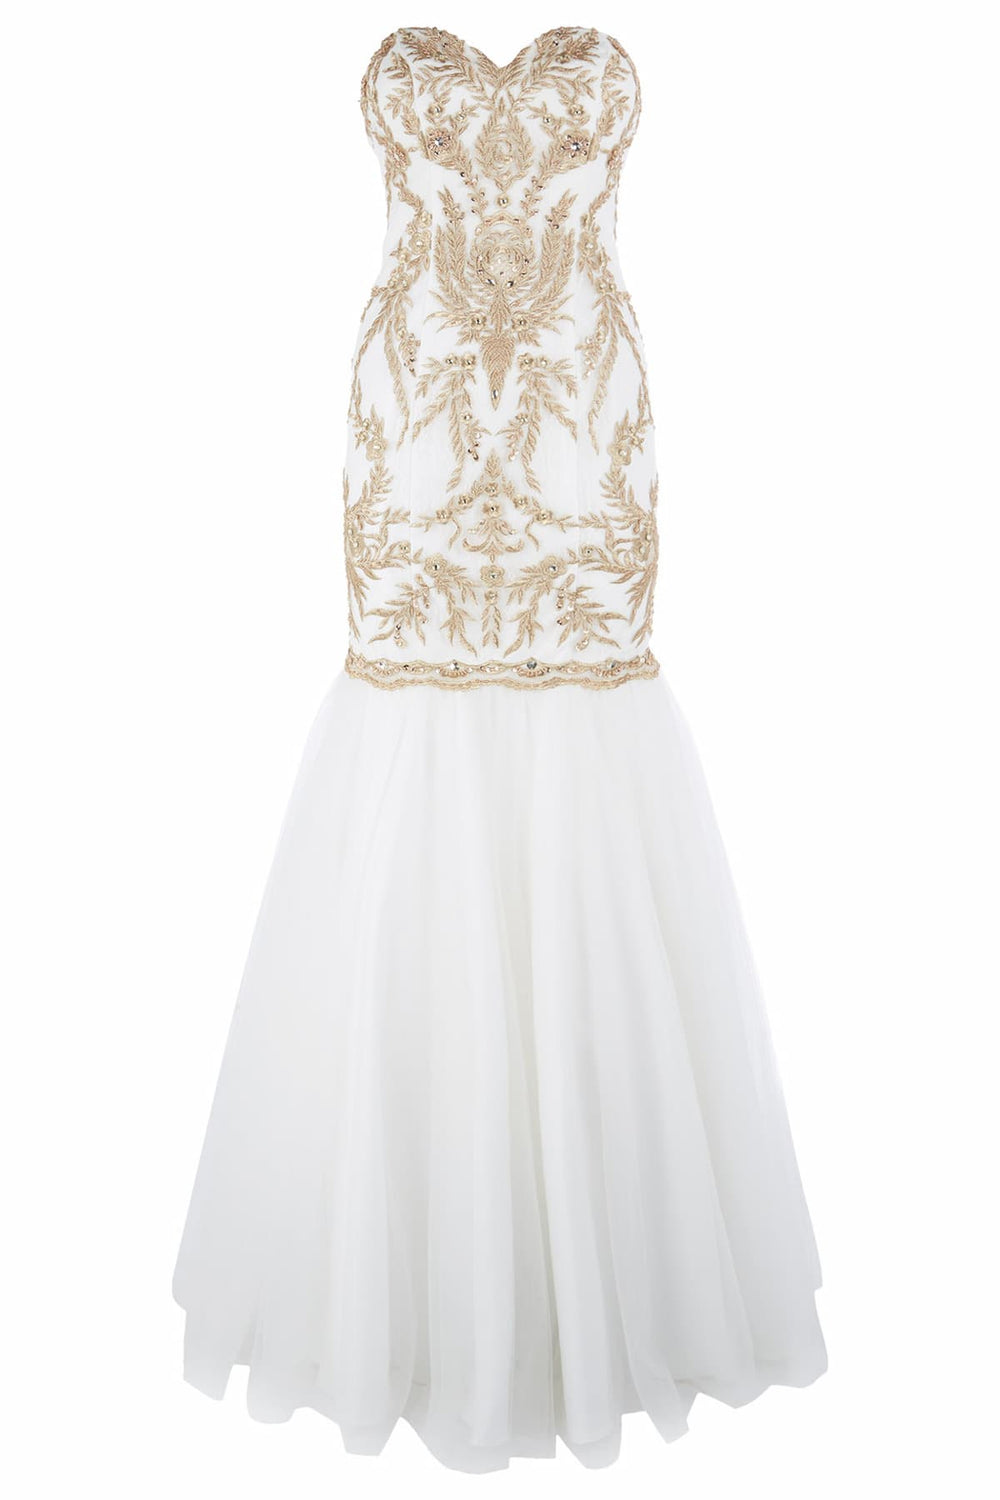 Dynasty 1012667 Bridal Gown